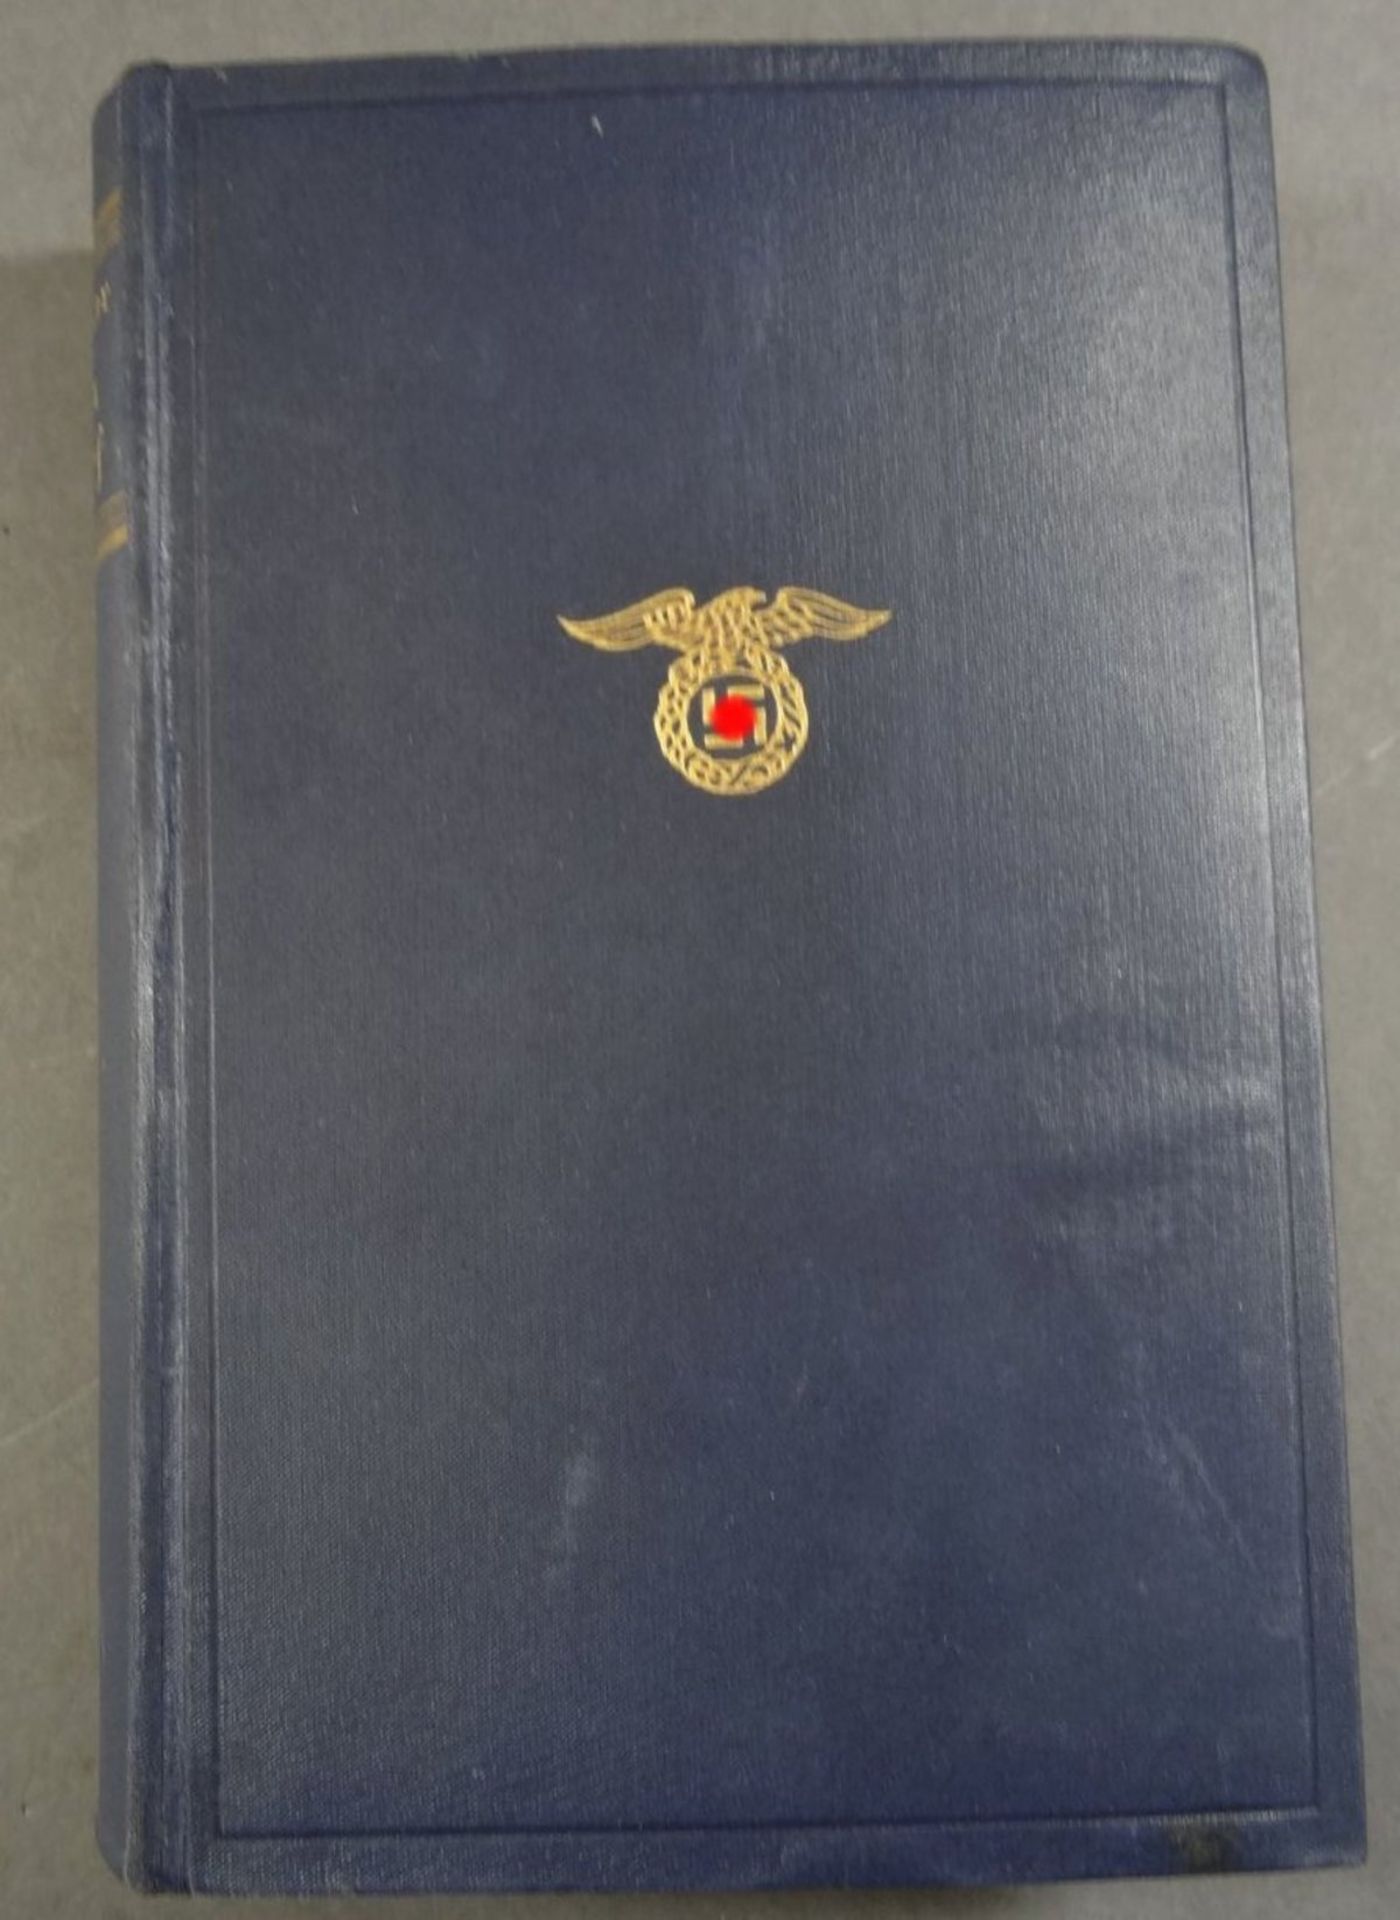 A.Hitler "Mein Kampf" 1933, blaue Ausgabe, gut erhalten, mehrfach gestempelt "preuss. Amtsgericht - Image 2 of 4